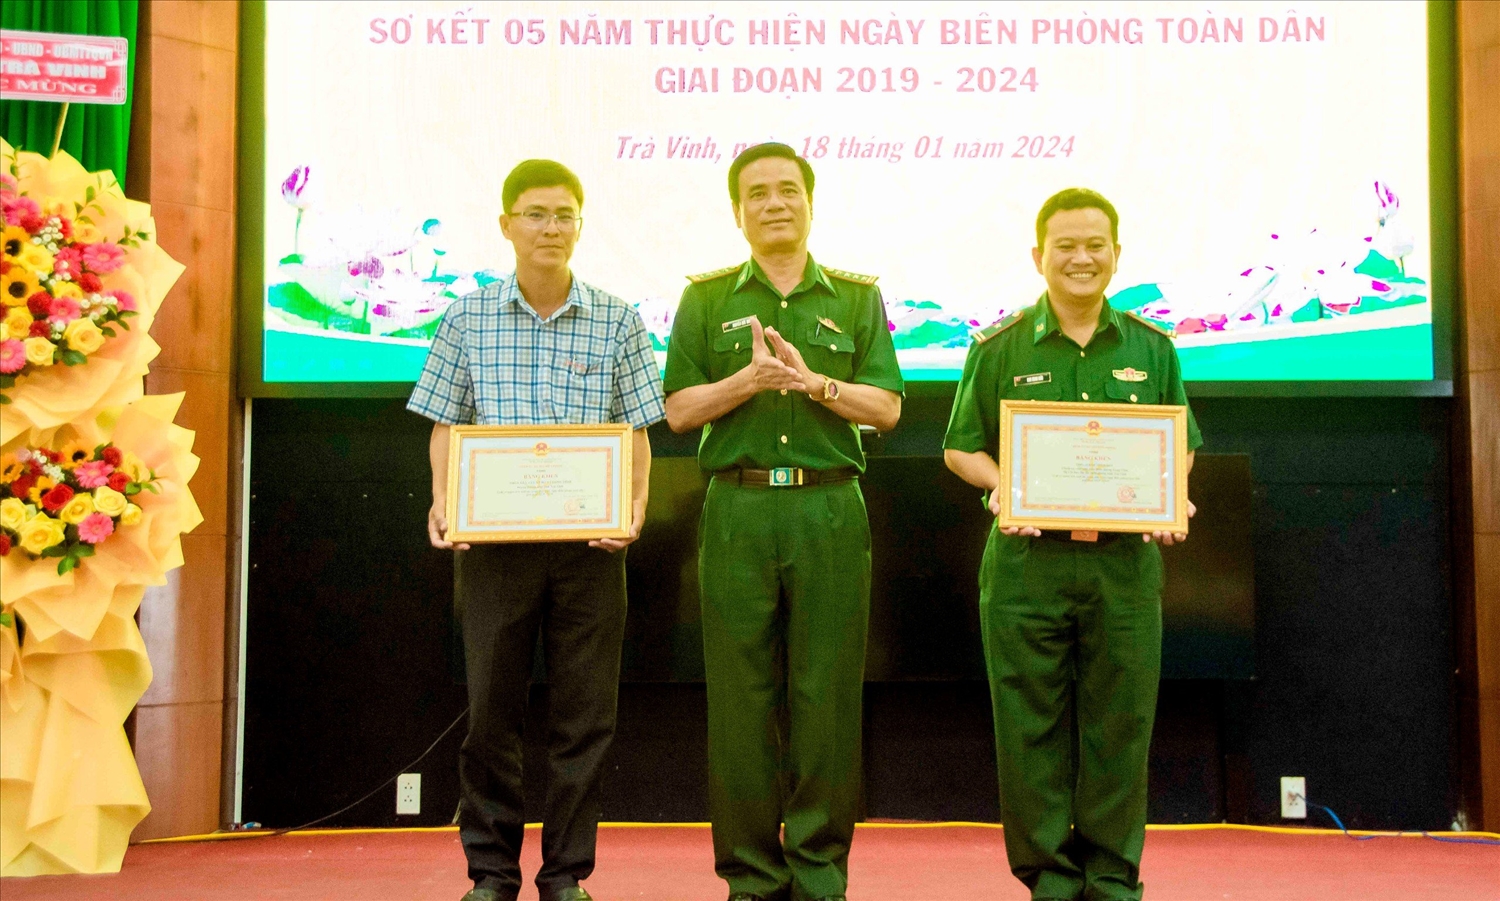 Đại tá Nguyễn Đức Minh, Chỉ huy trưởng BĐBP tỉnh Trà Vinh thừa uỷ nhiệm Bộ Tư Lệnh trao Bằng khen của Bộ Tư lệnh BĐBP cho 01 tập thể và 01 cá nhân